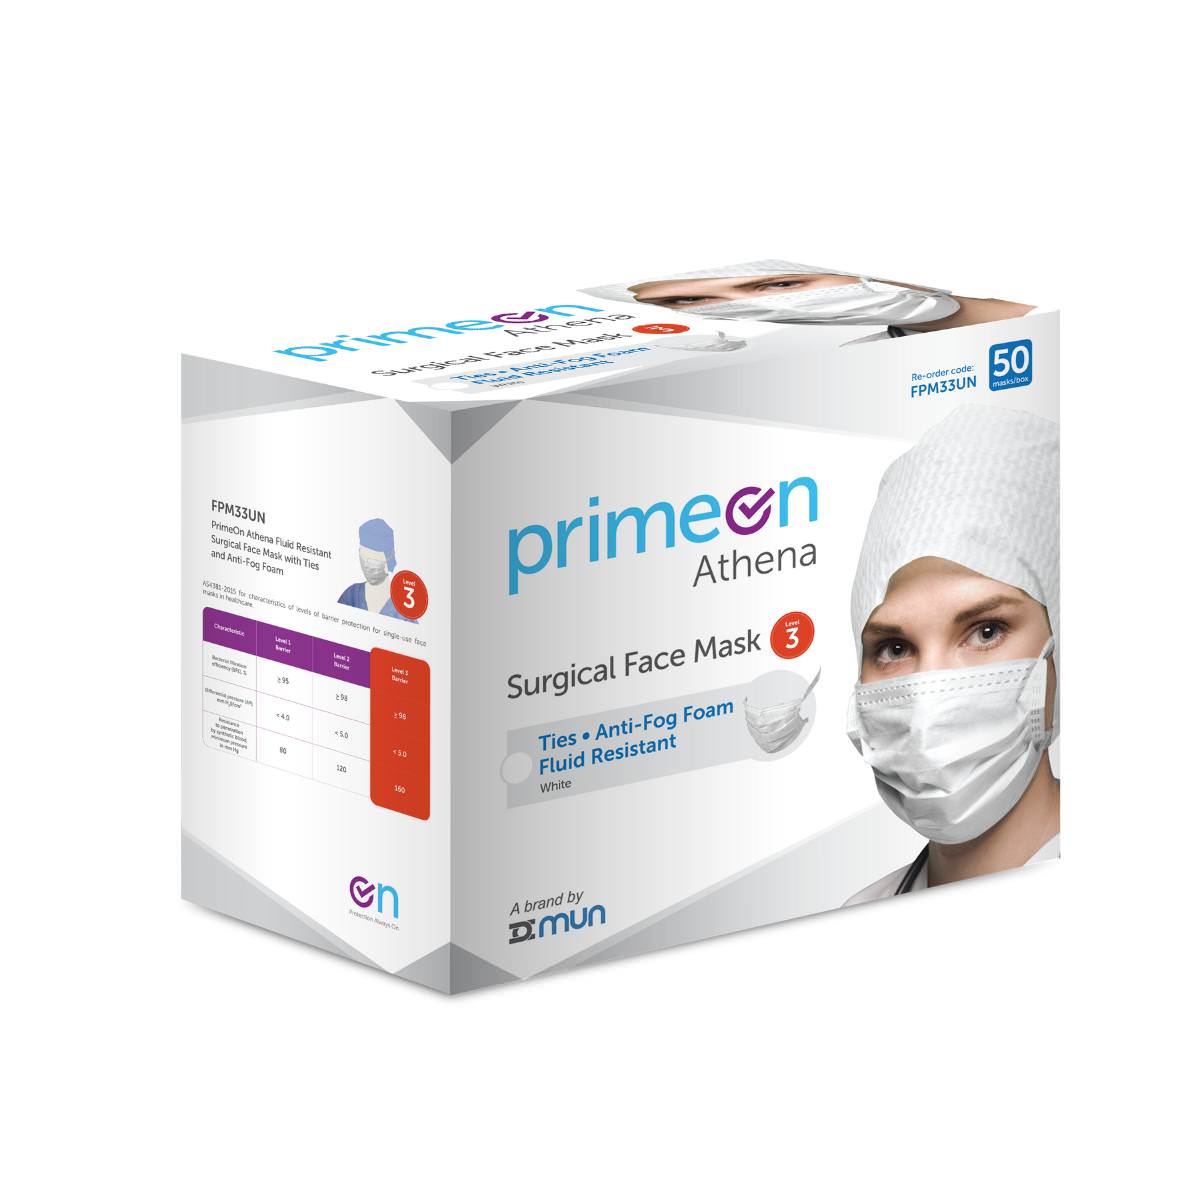 PrimeOn ASTM Artemis Level 3 Surgical Face Mask FPM33UN (Carton of 6 Boxes)